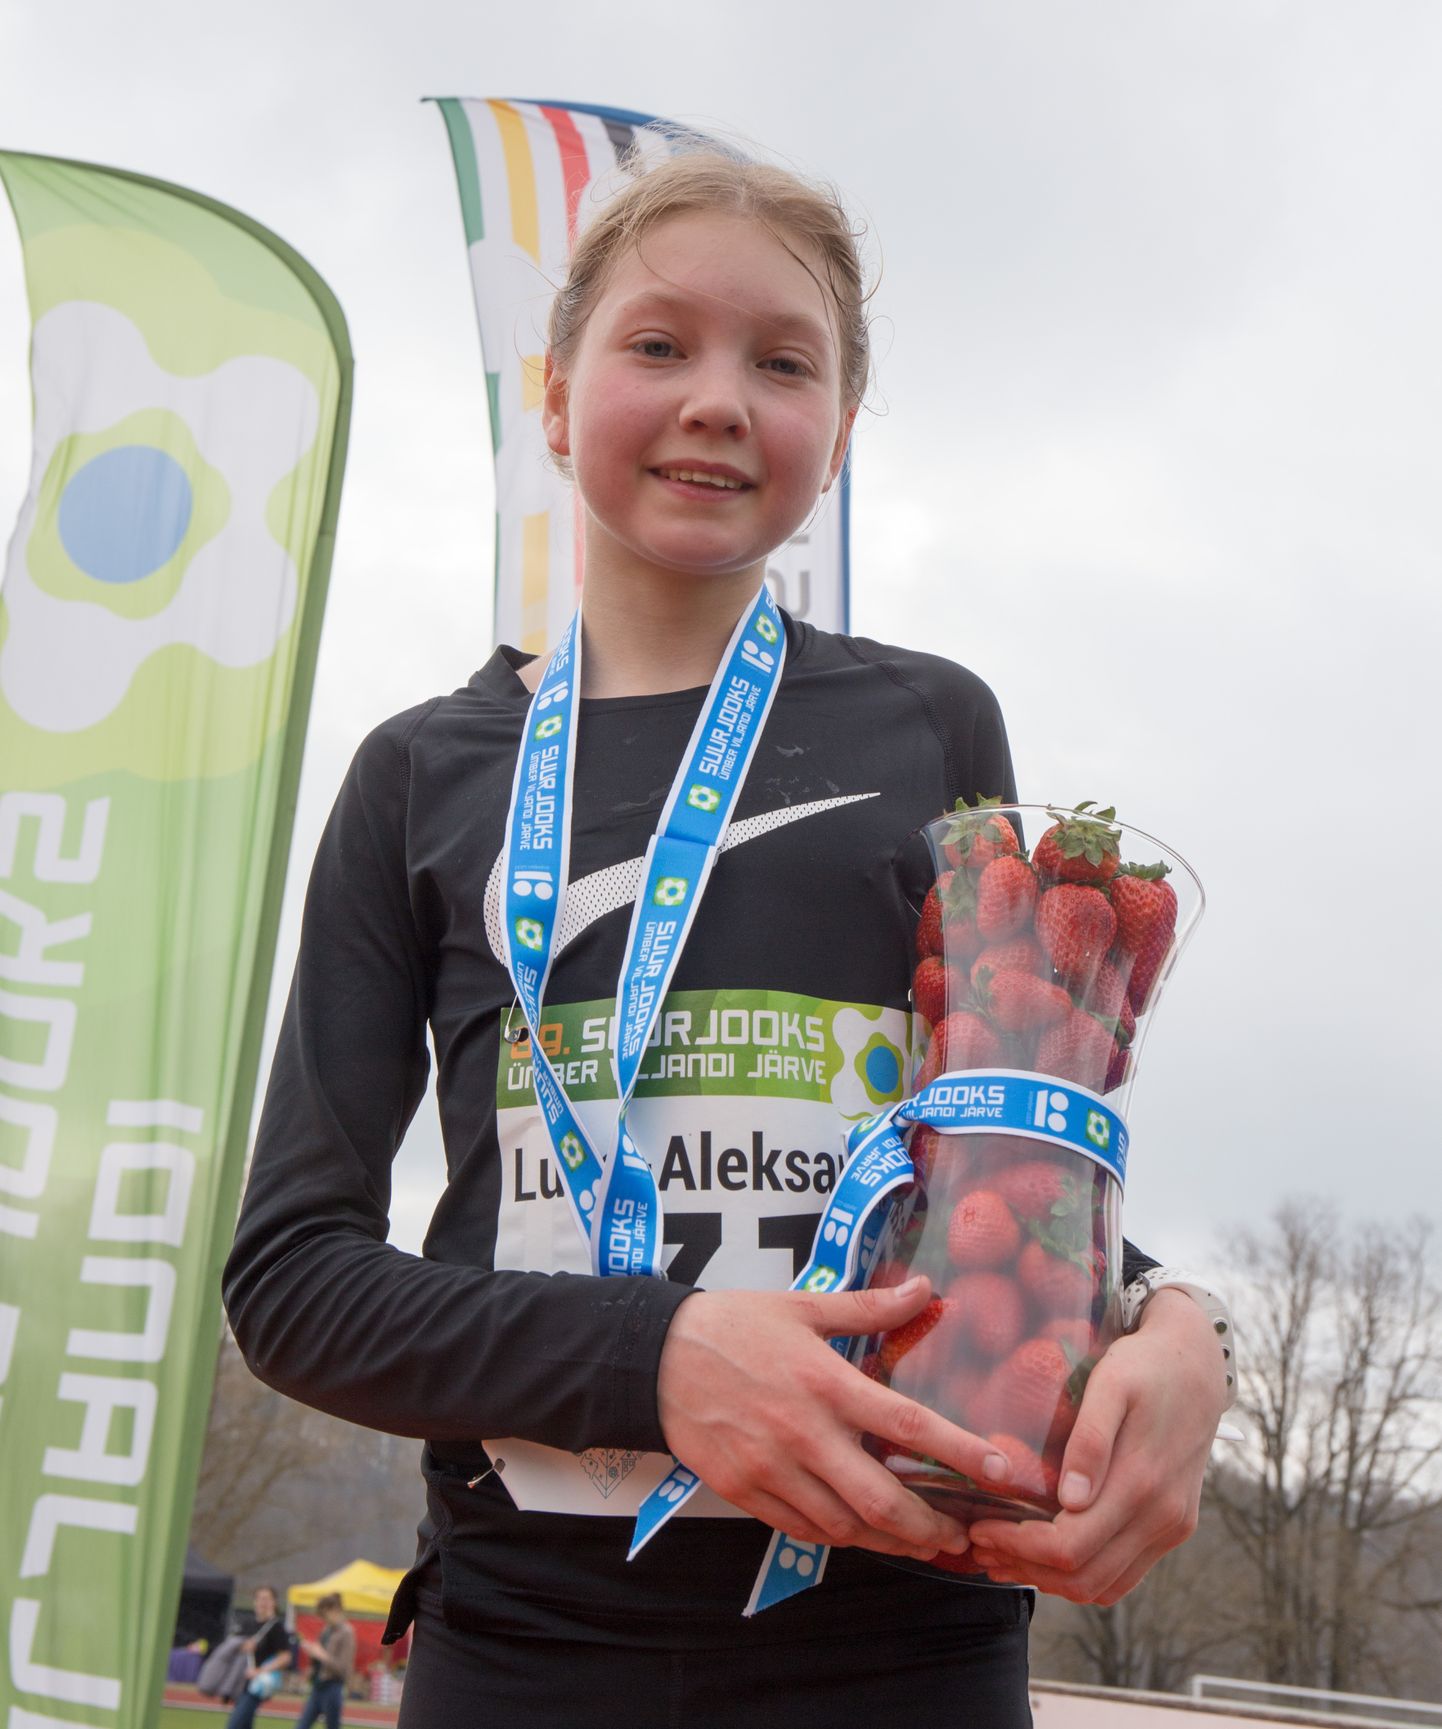 Luna-Aleksandra Lagoda pärast Viljandi järvejooksu võitmist 2018. aastal